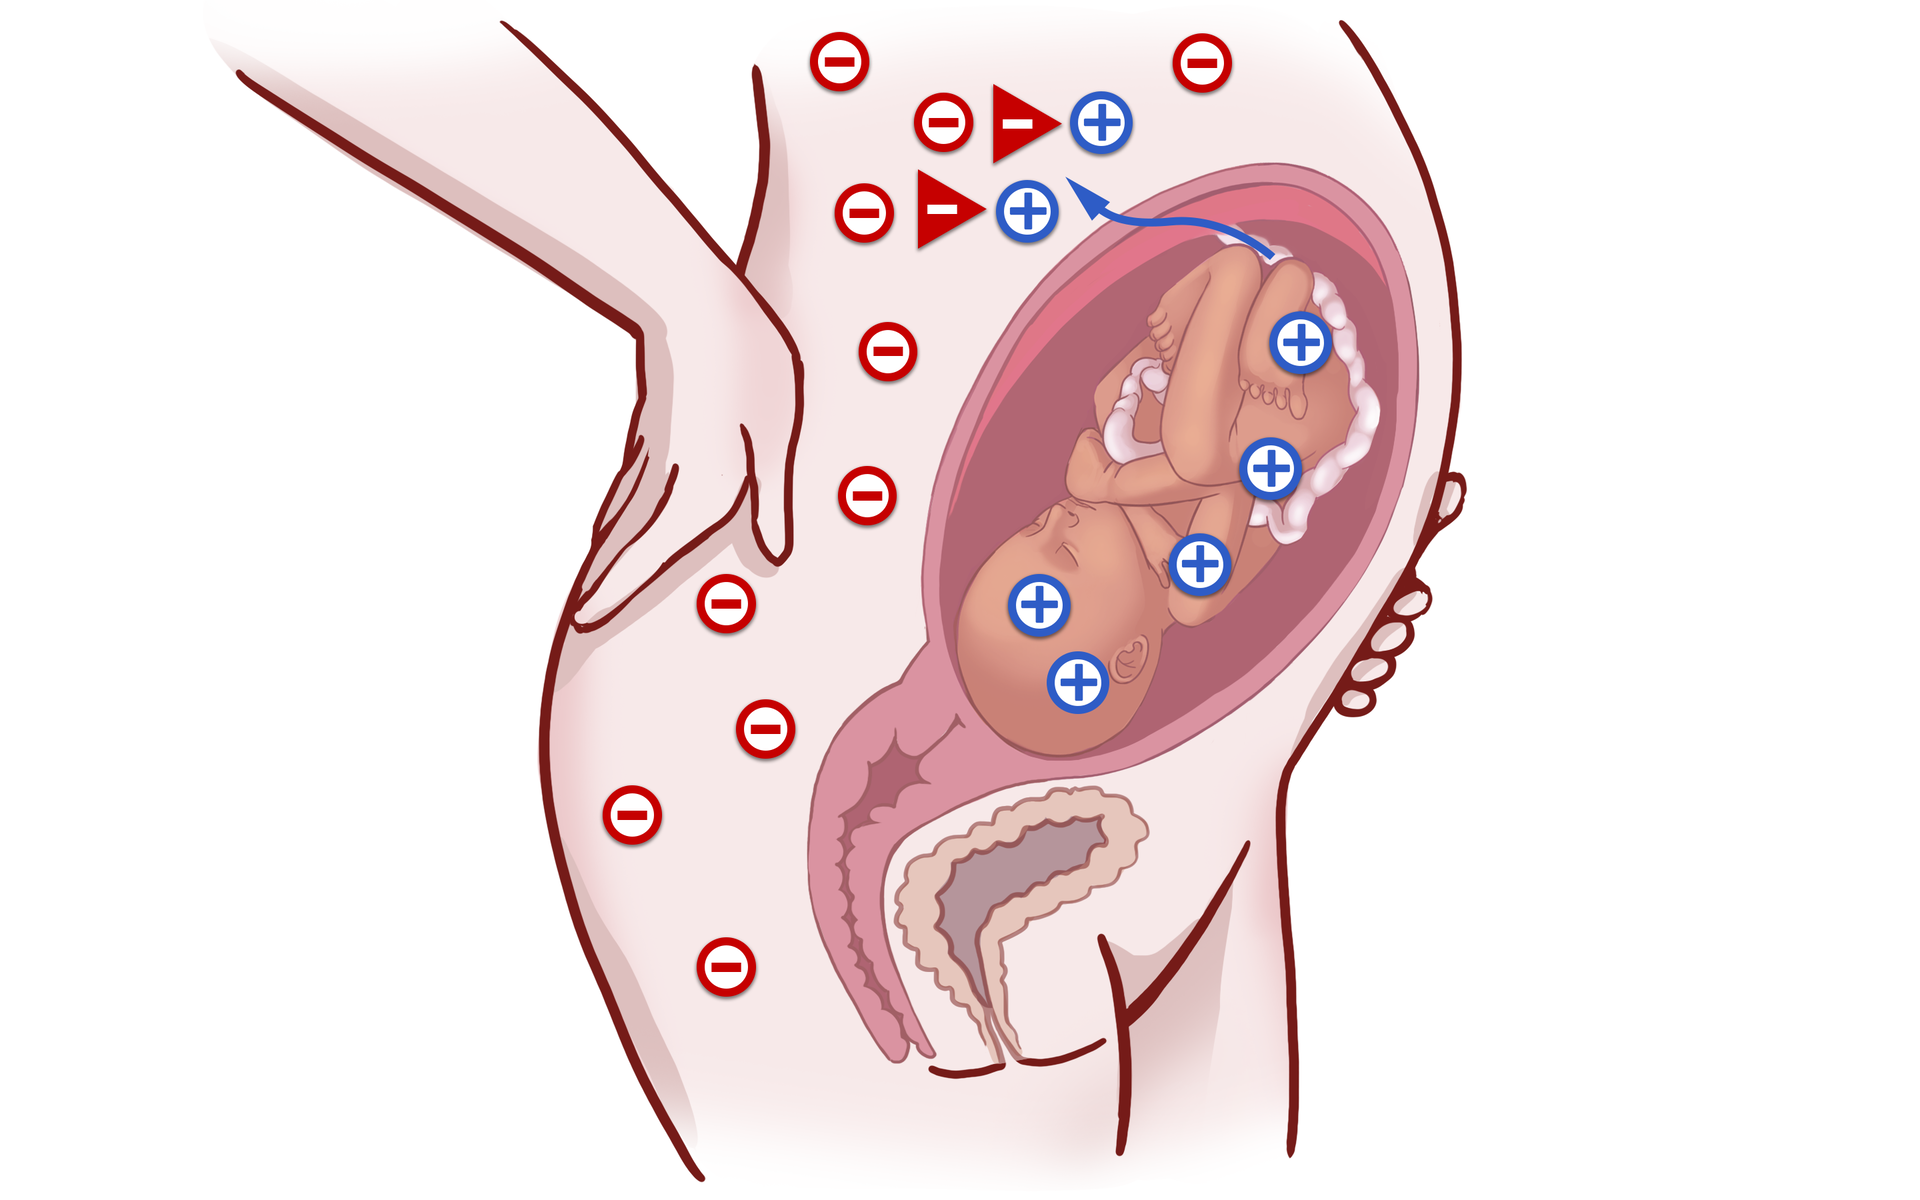 Grafika przedstawia przekrój ciała kobietę w ciąży. Na jej ciele widoczne są minusy, sygnalizujące grupę krwi Rh-. Natomiast płód posiada grupę krwi Rh+, sygnalizowaną przez plusy na jego ciele. Dochodzi do kontaktu krwi matki z krwią płodu, co powoduje wytworzenie we krwi matki przeciwciał anty‑D.